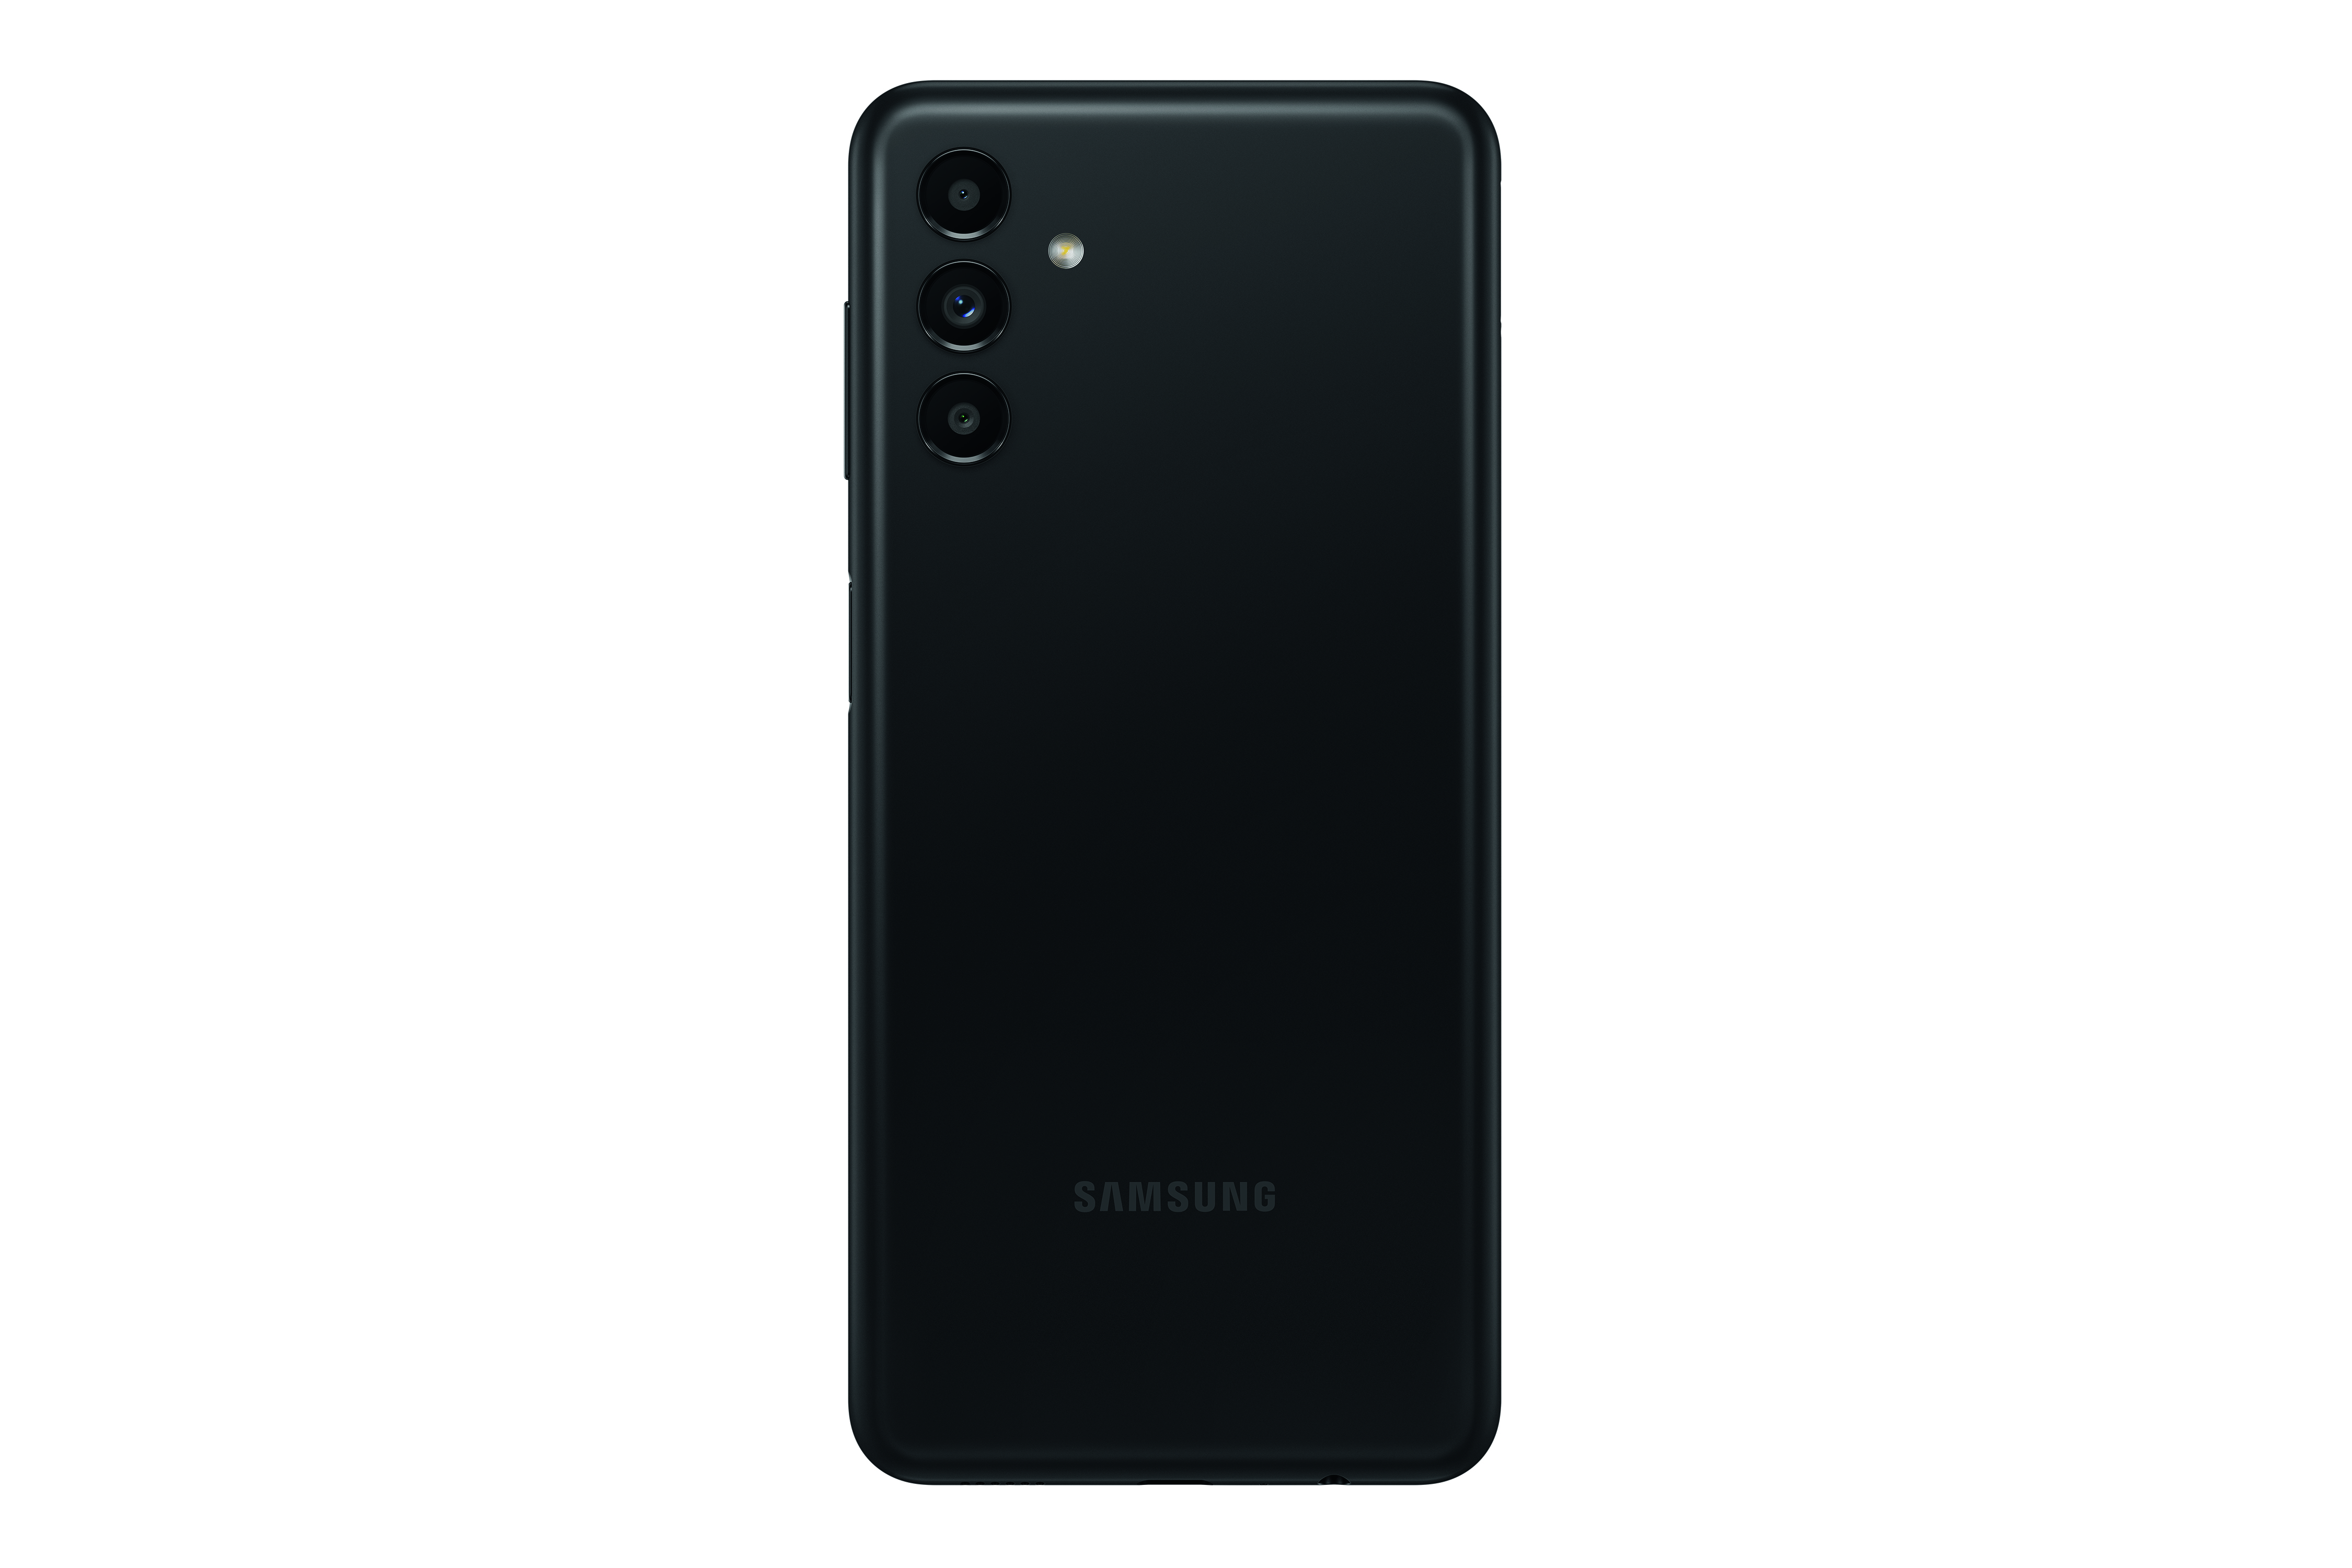 SAMSUNG GALAXY SIM GB 5G Dual A13 Black 64